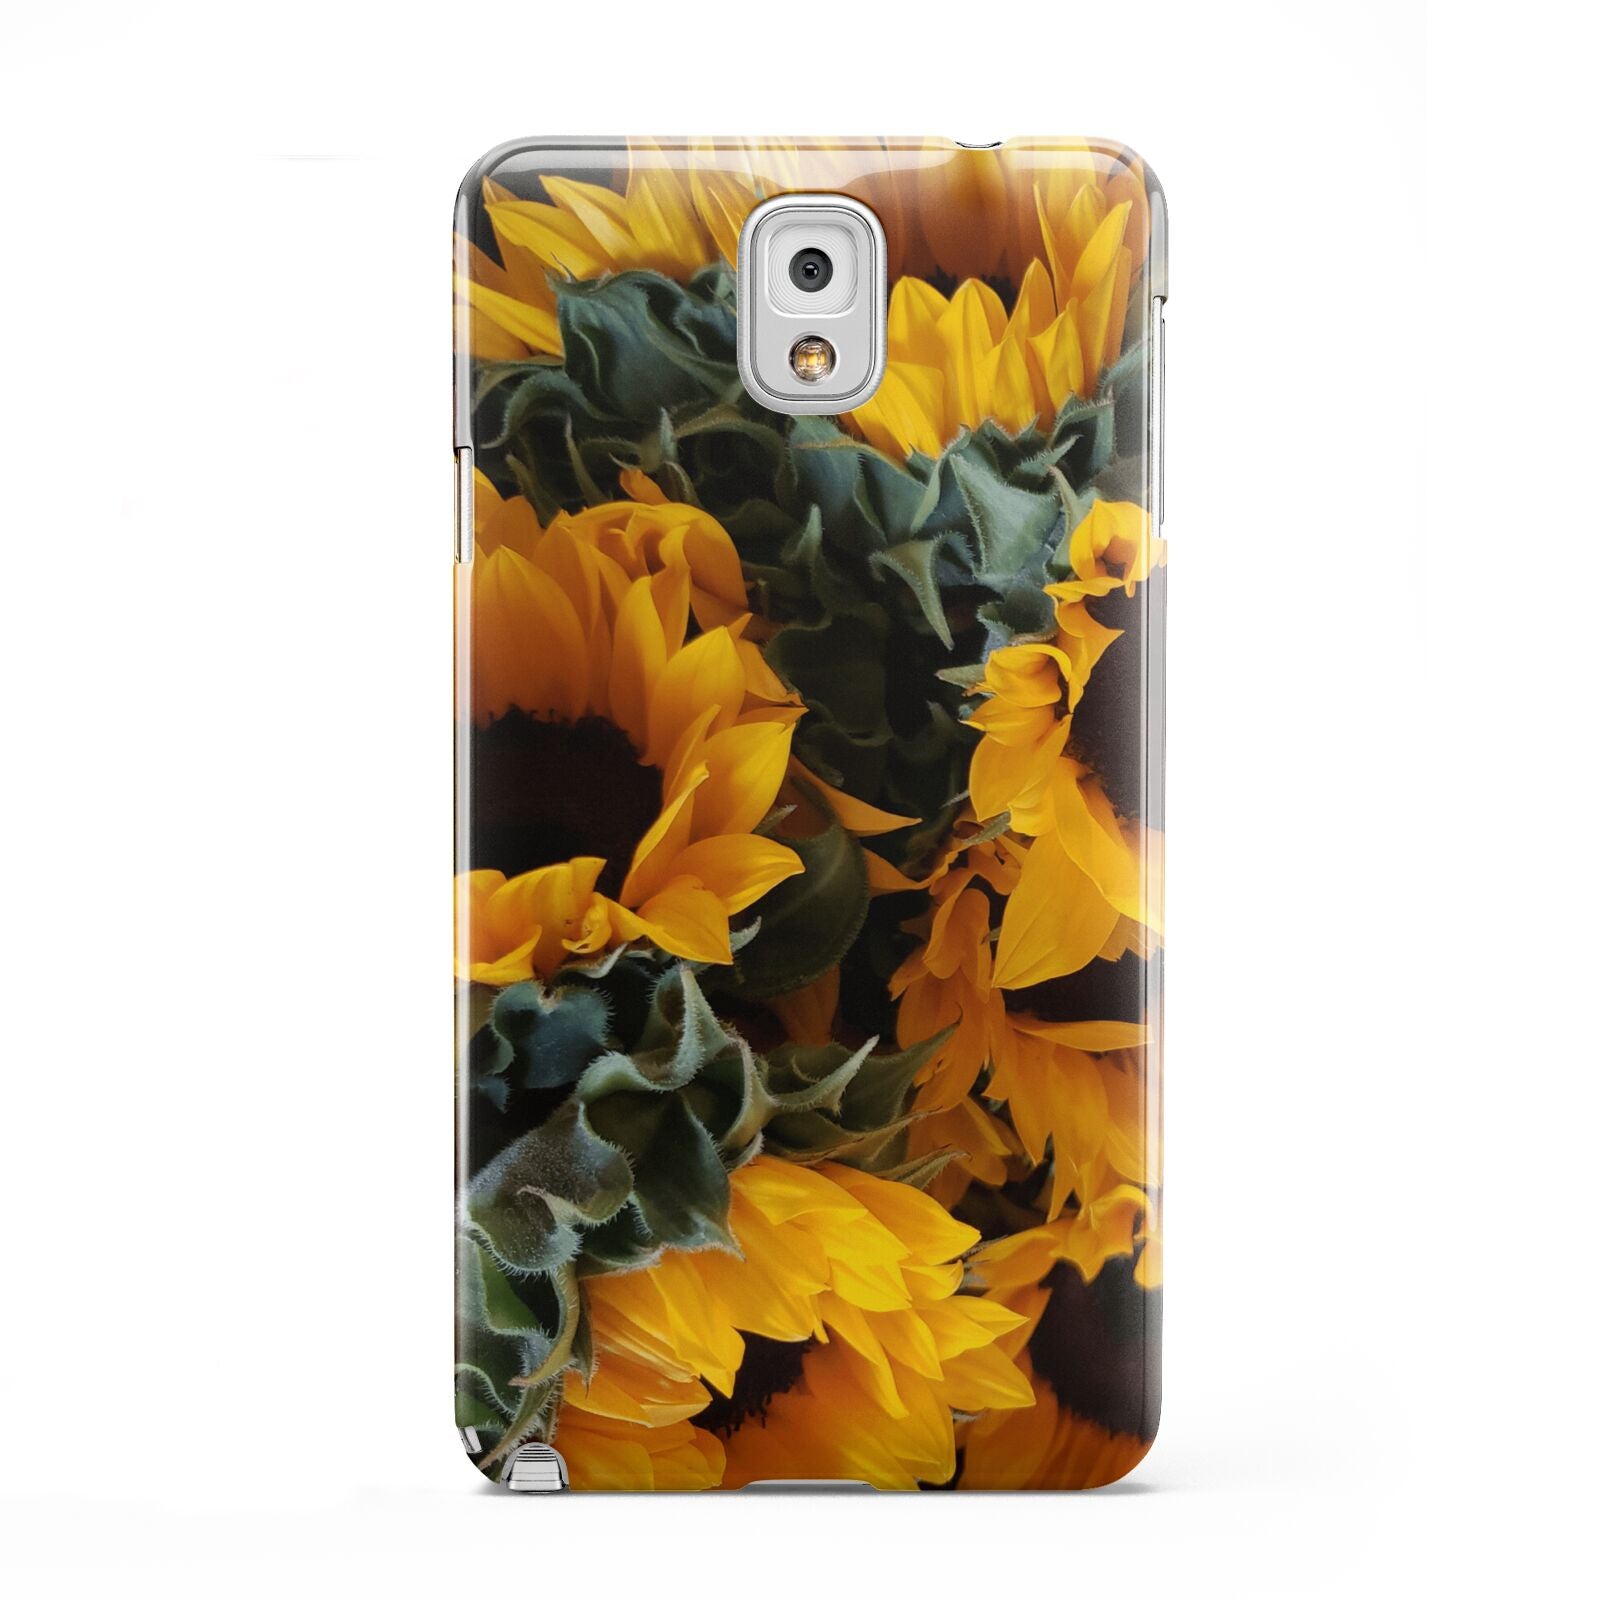 Sunflower Samsung Galaxy Note 3 Case